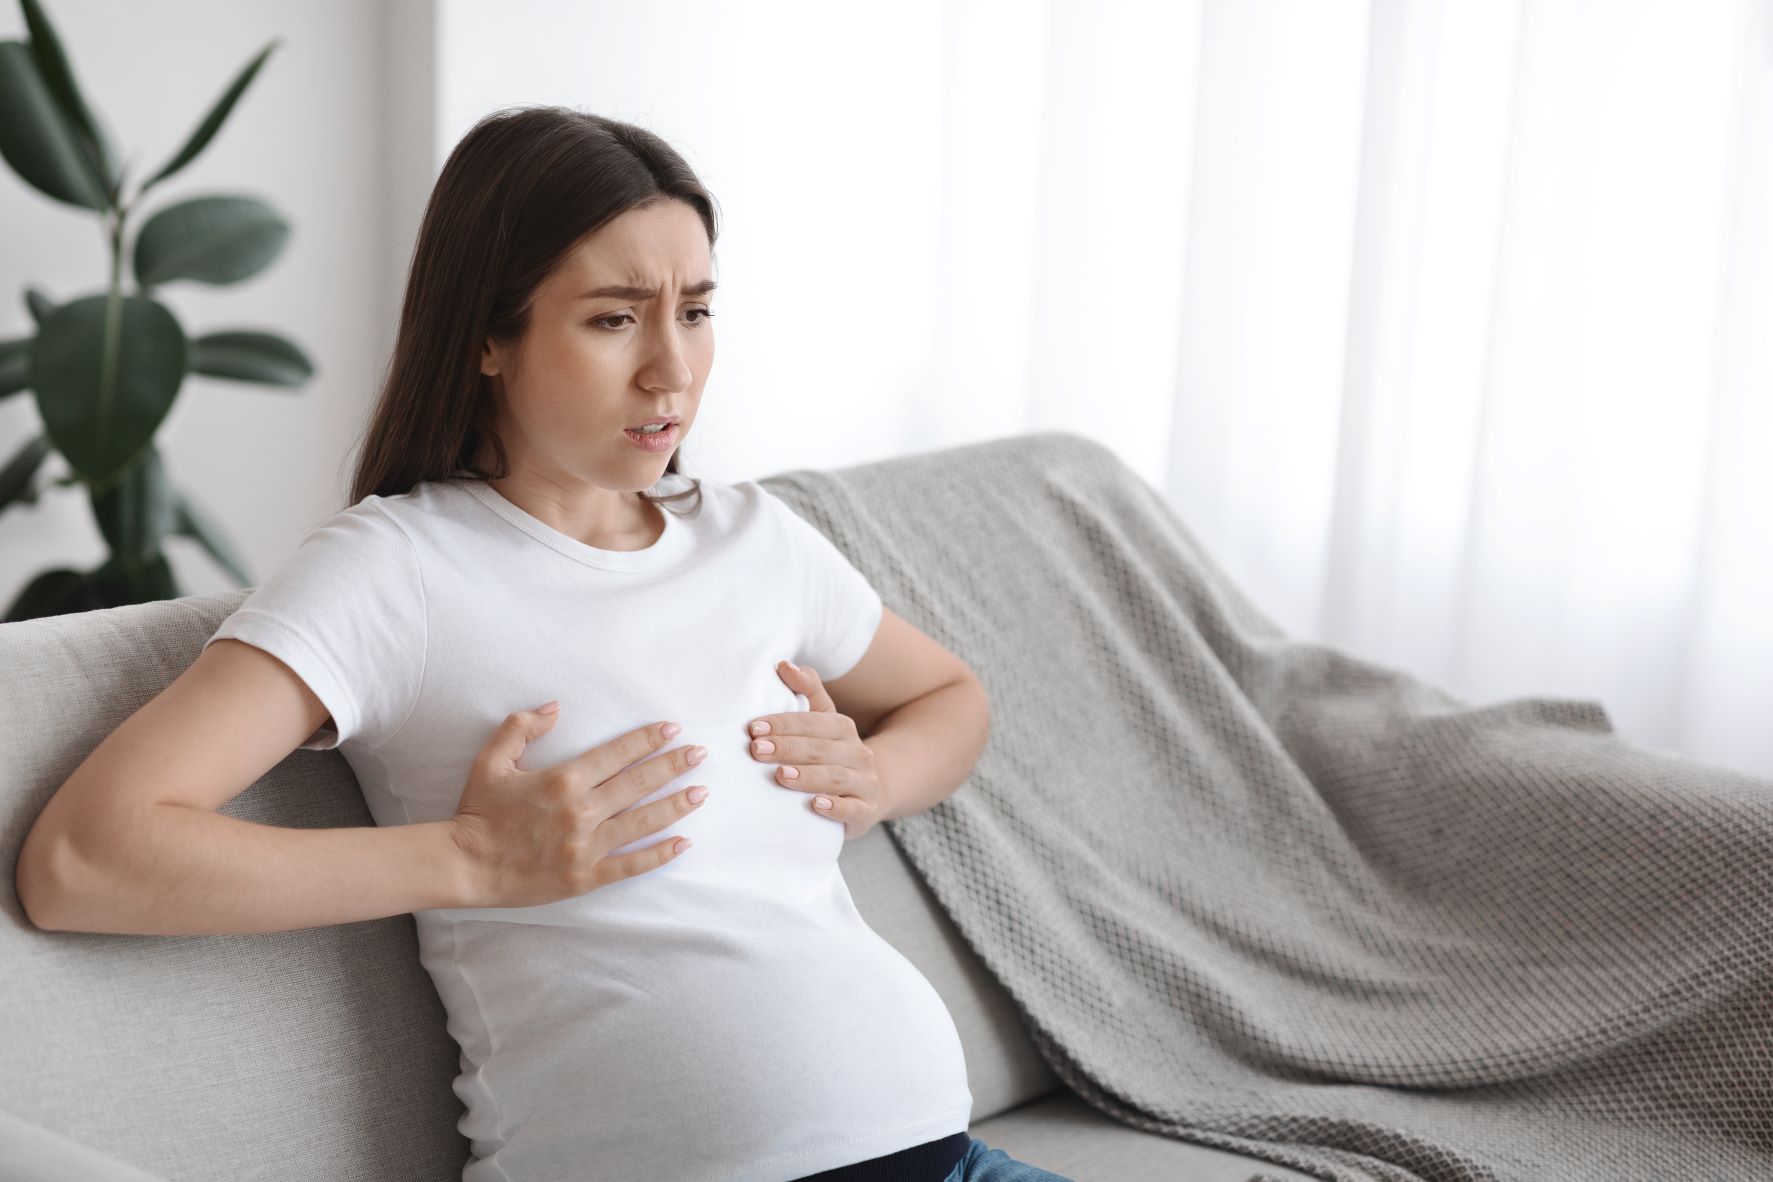 اعراض احتقان الثدي بسبب الرضاعة وكيفيه علاجه